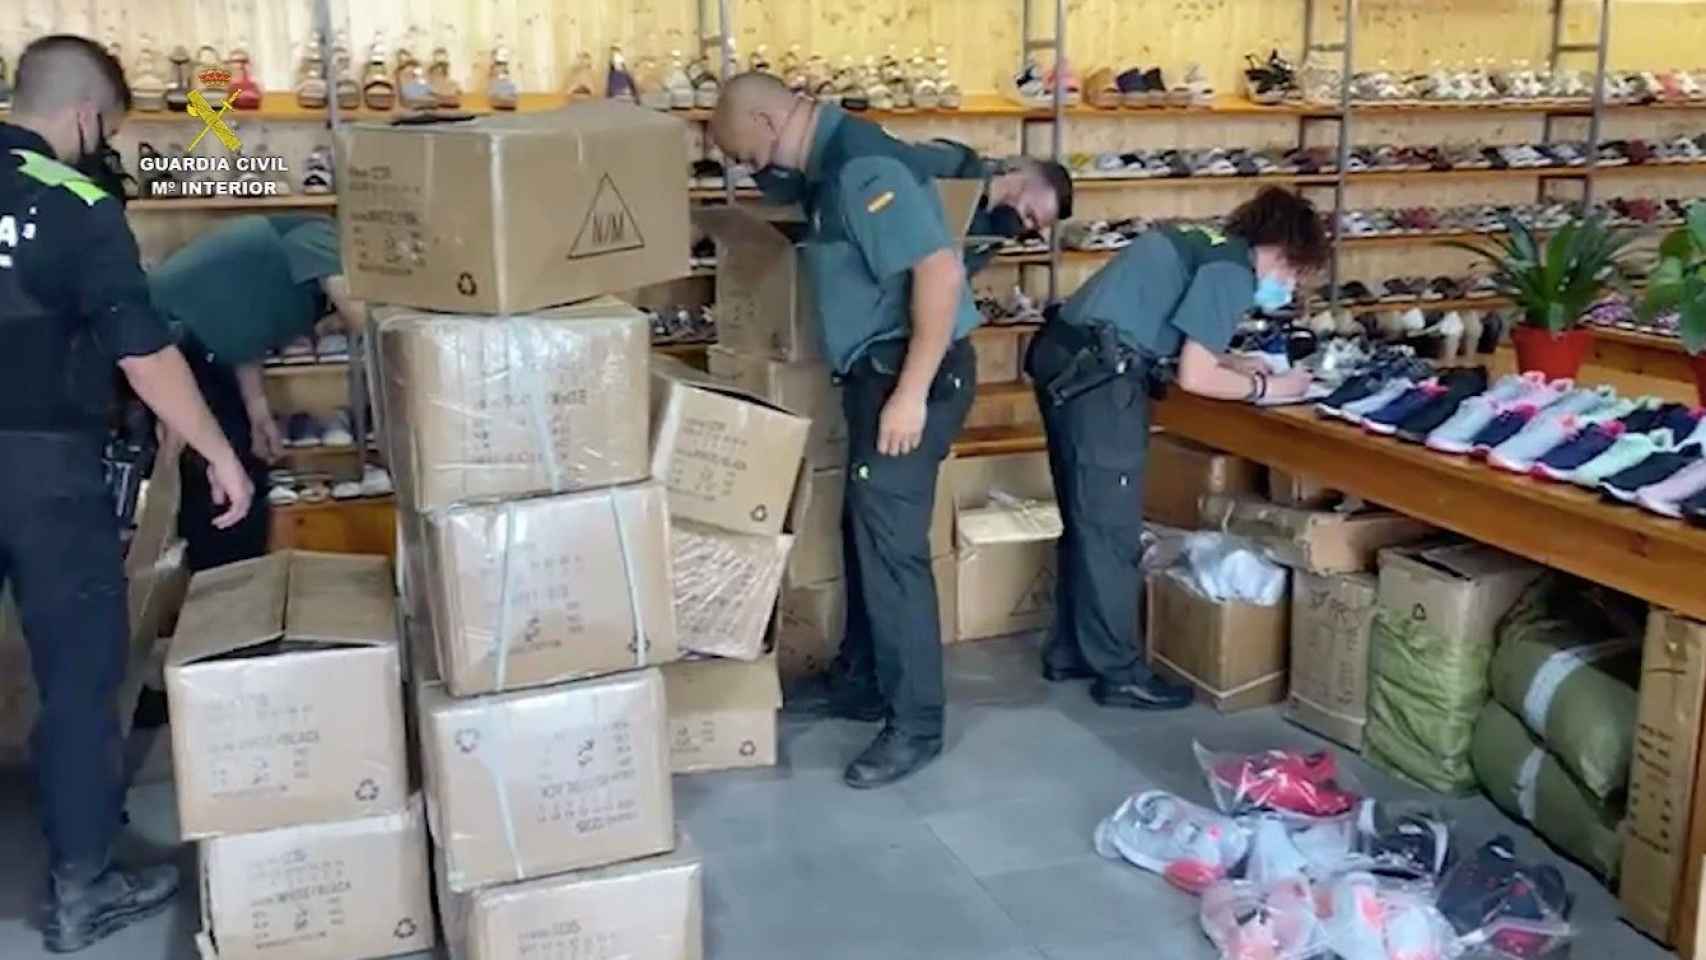 Operación contra las falsificaciones en Badalona / GUARDIA CIVIL